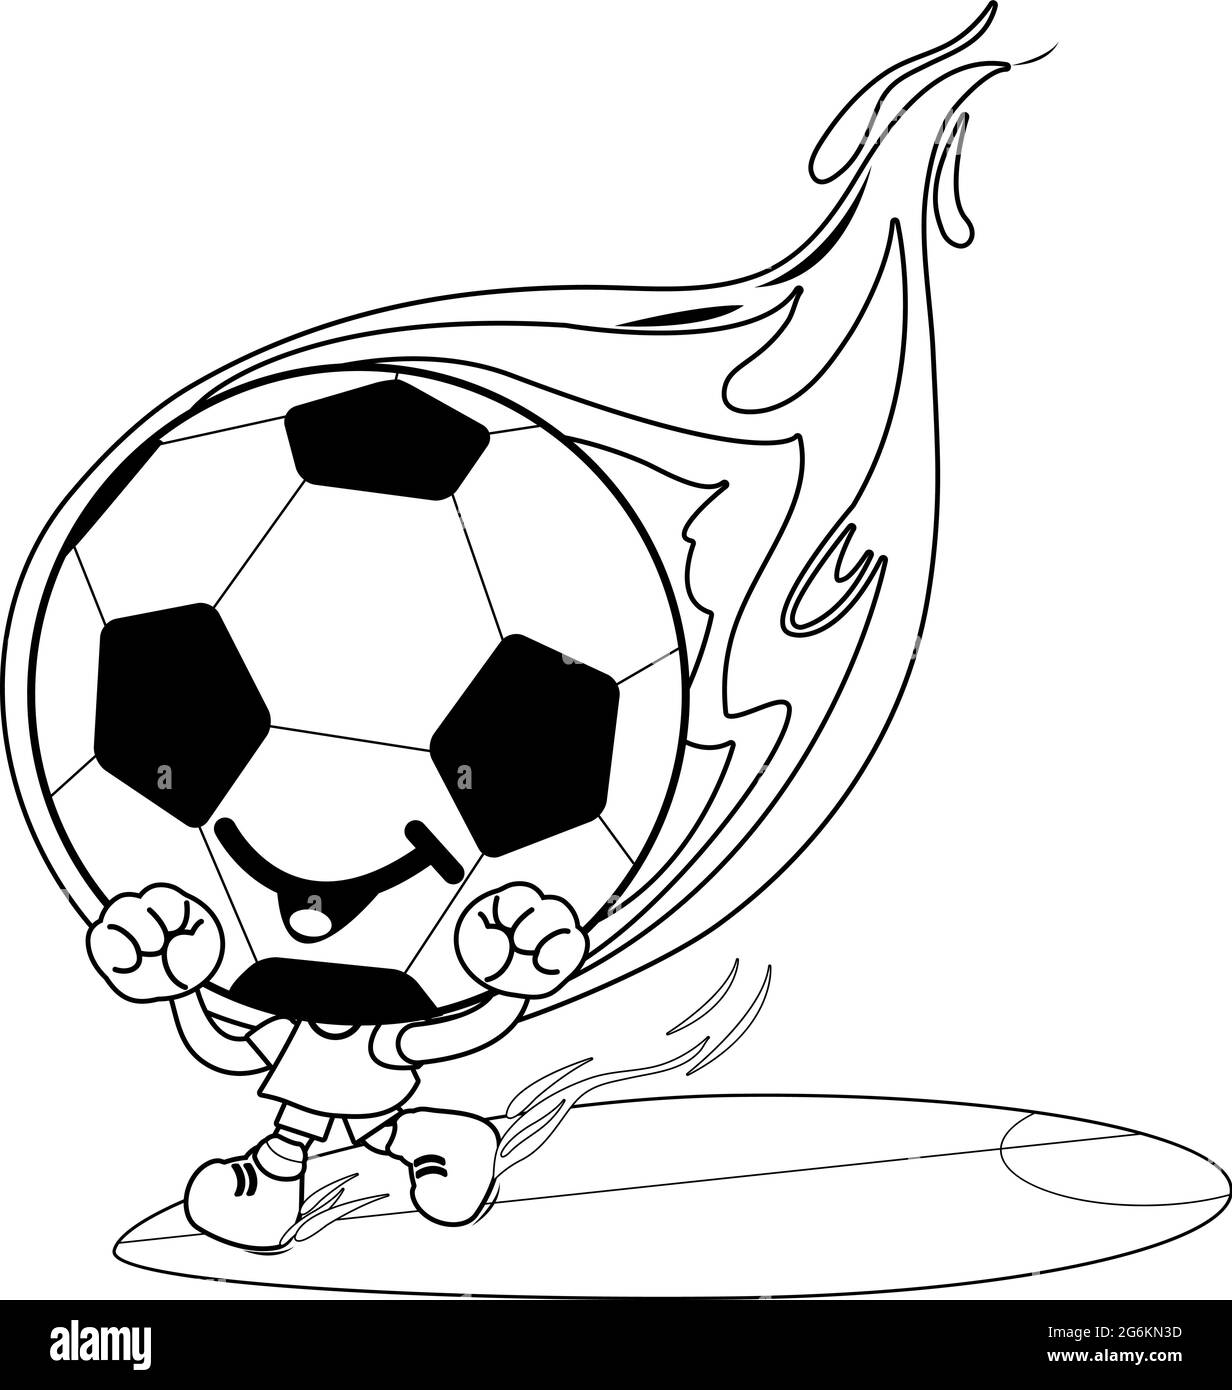 Cartoon Fußballfigur auf Feuer. Vektor schwarz-weiß Malseite Stock Vektor